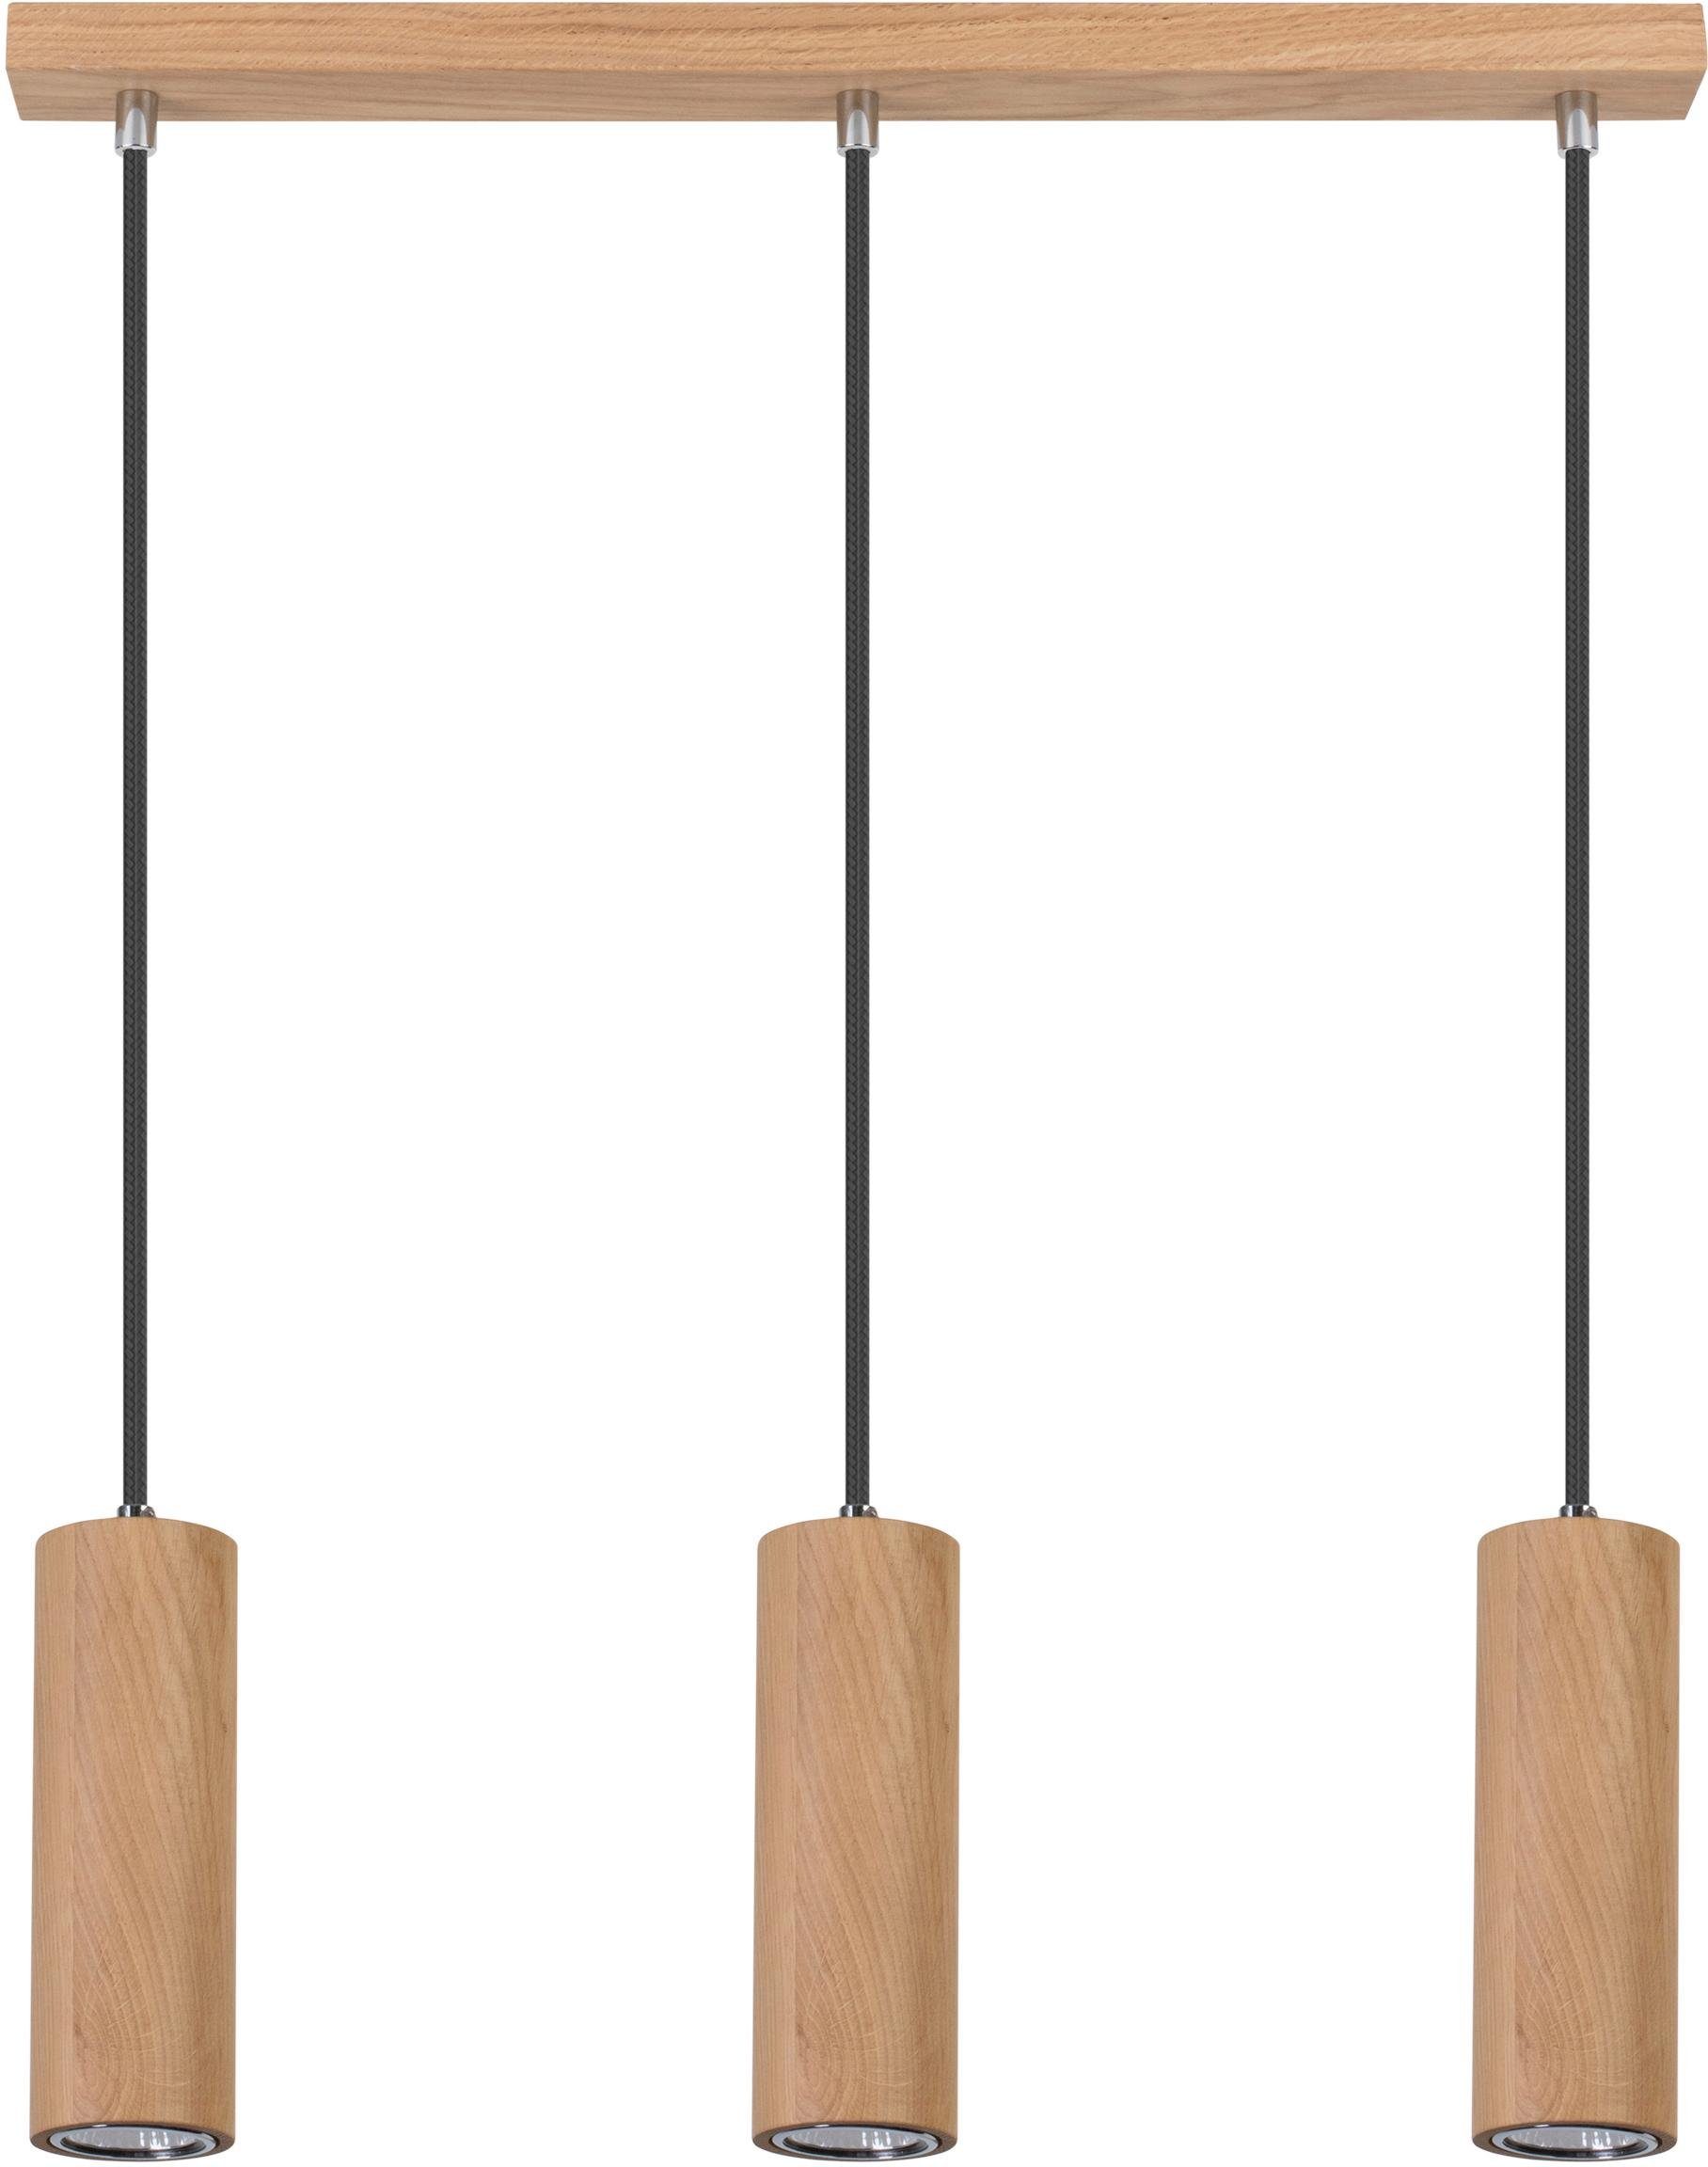 SPOT Light Hanglamp PIPE Hanglamp, natuurproduct van eikenhout, FSC®-gecertificeerd, GU10-ledverlichting inclusief, led verwisselbaar, met textielen kabel, Made in EU